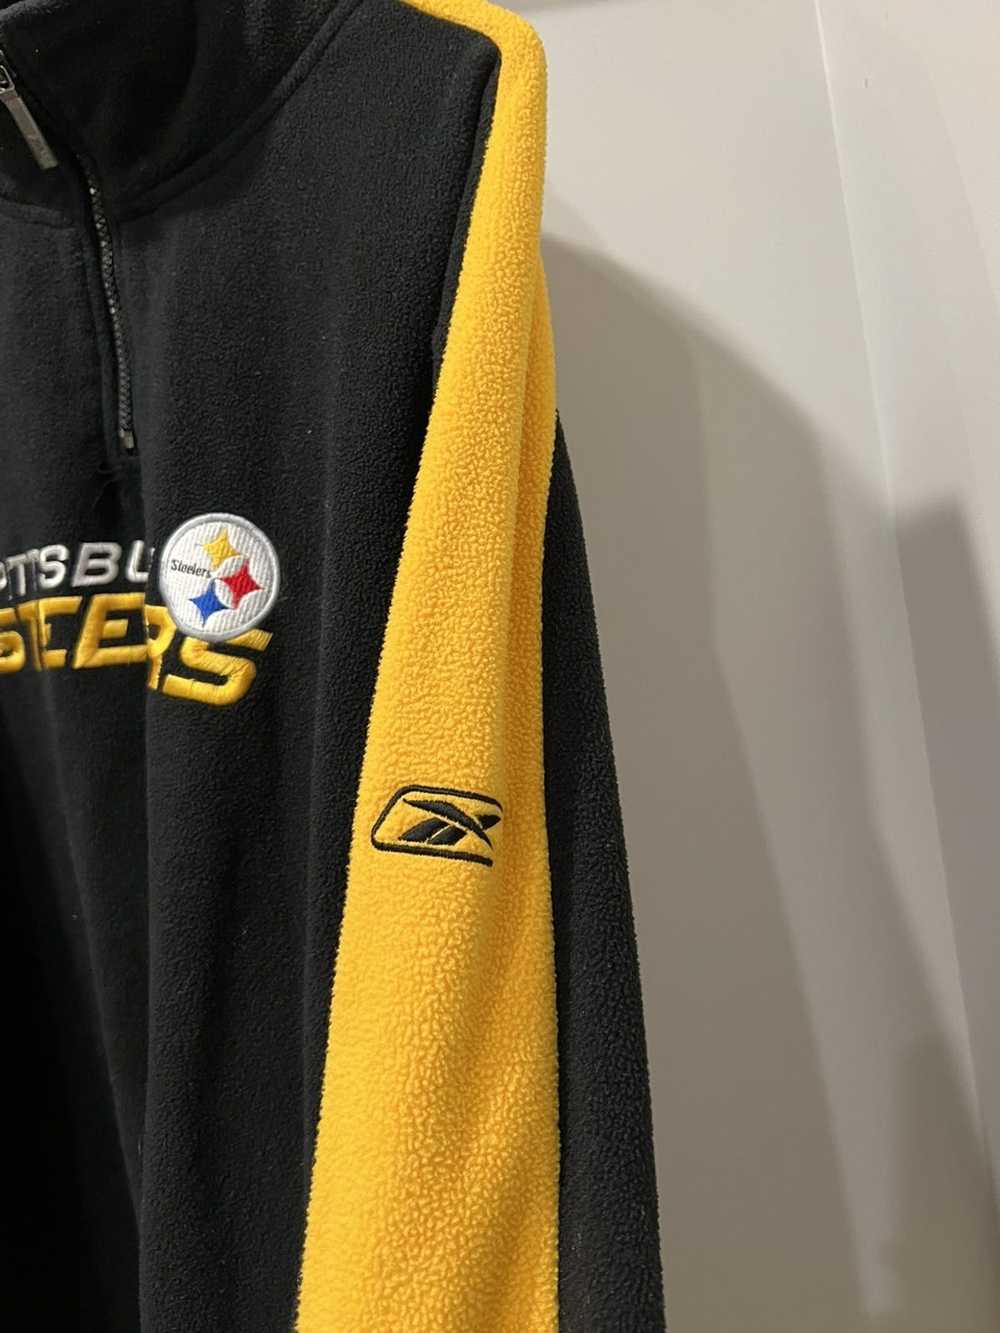 NFL × Reebok Vintage Pittsburgh Steelers Jacket - image 2